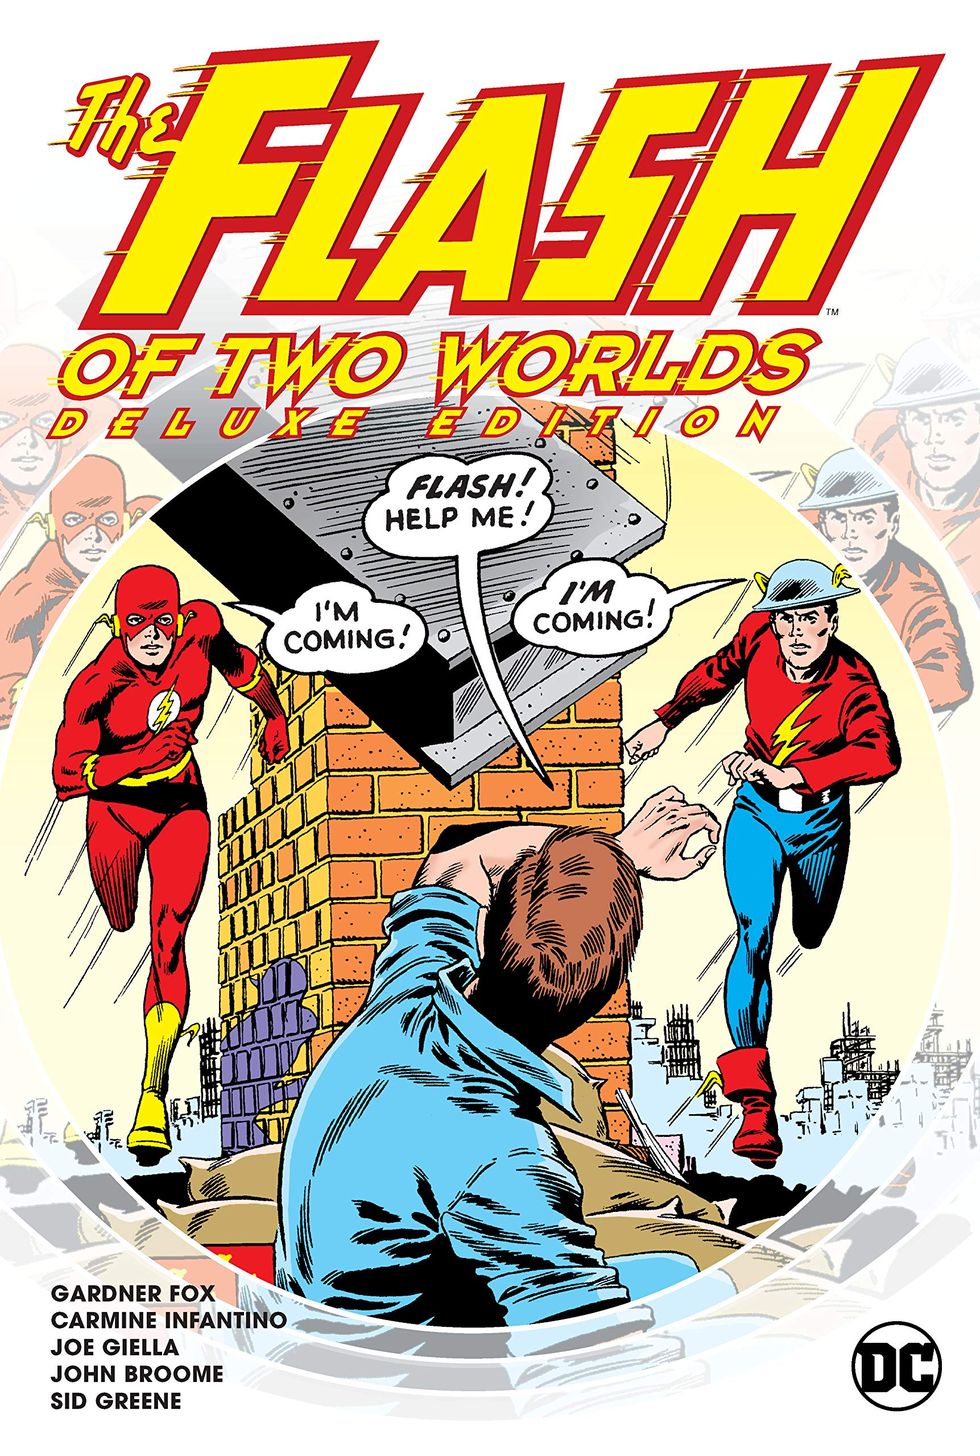 Flash's Rogues  Flash comics, Flash dc comics, Comic book artwork